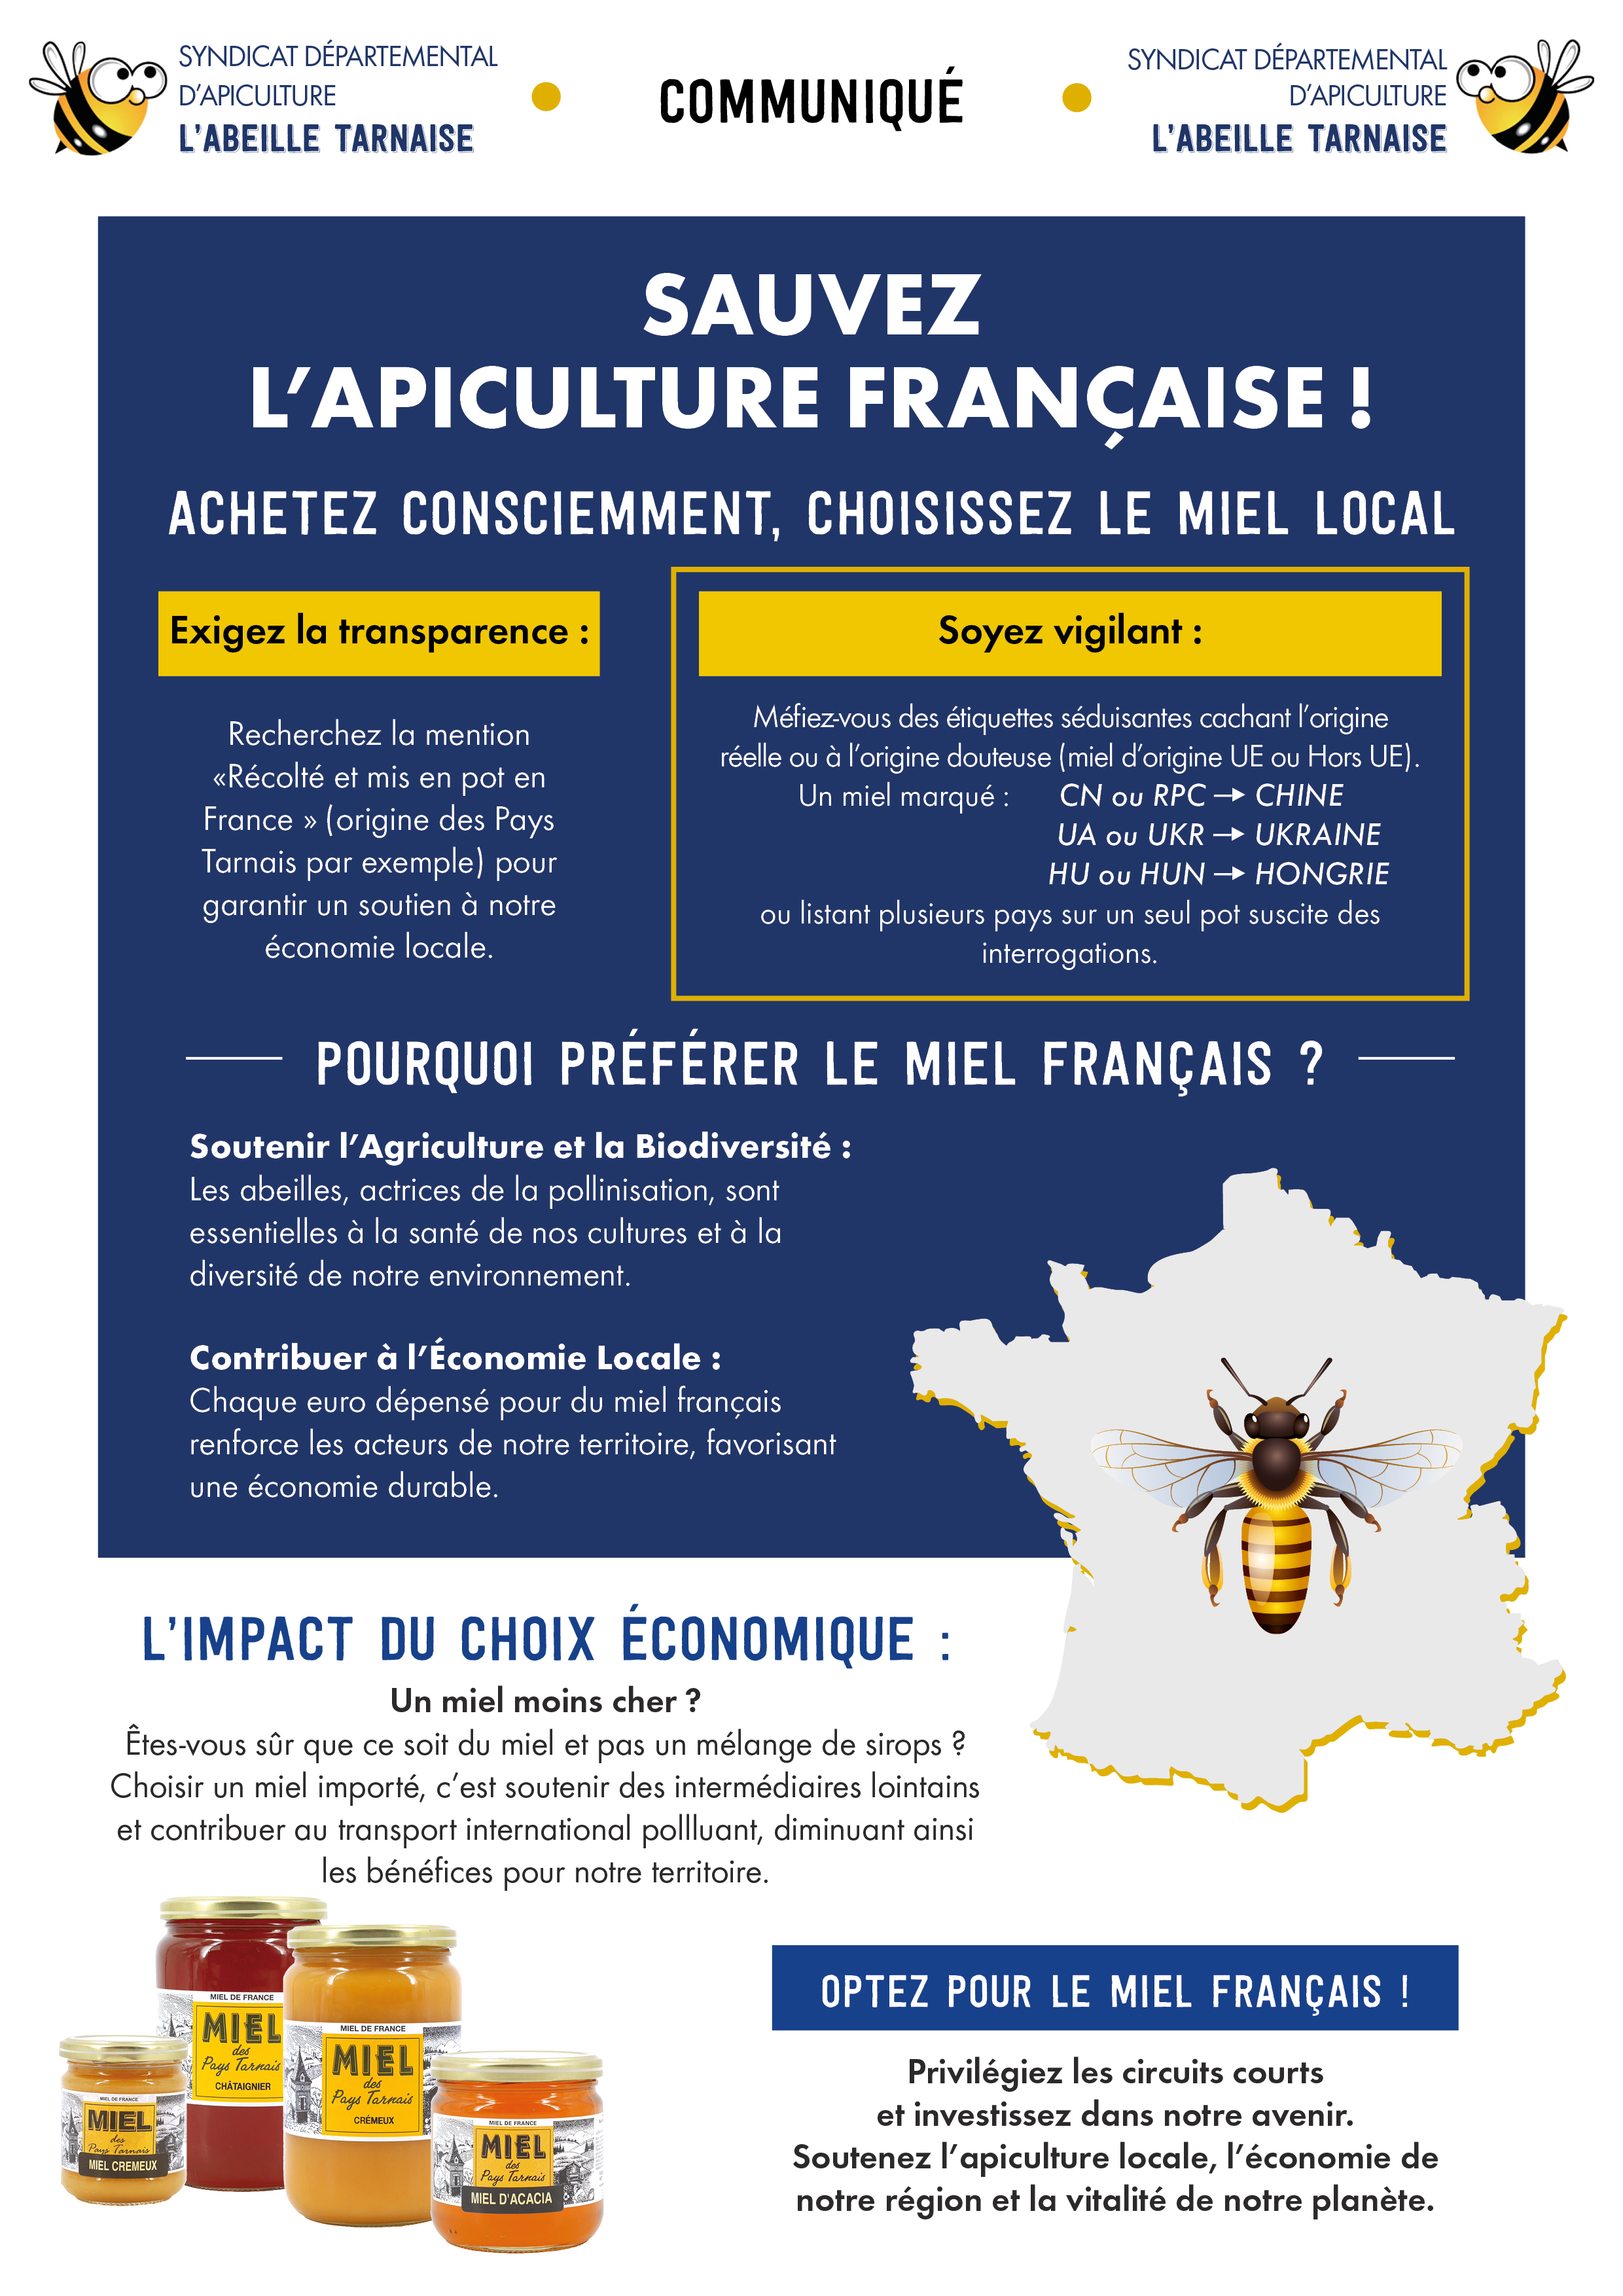 Nous avons récemment contribué à la réalisation d'une affiche sur le miel français en collaboration avec le syndicat apicole L'Abeille Tarnaise, un sujet qui nous tient à cœur.